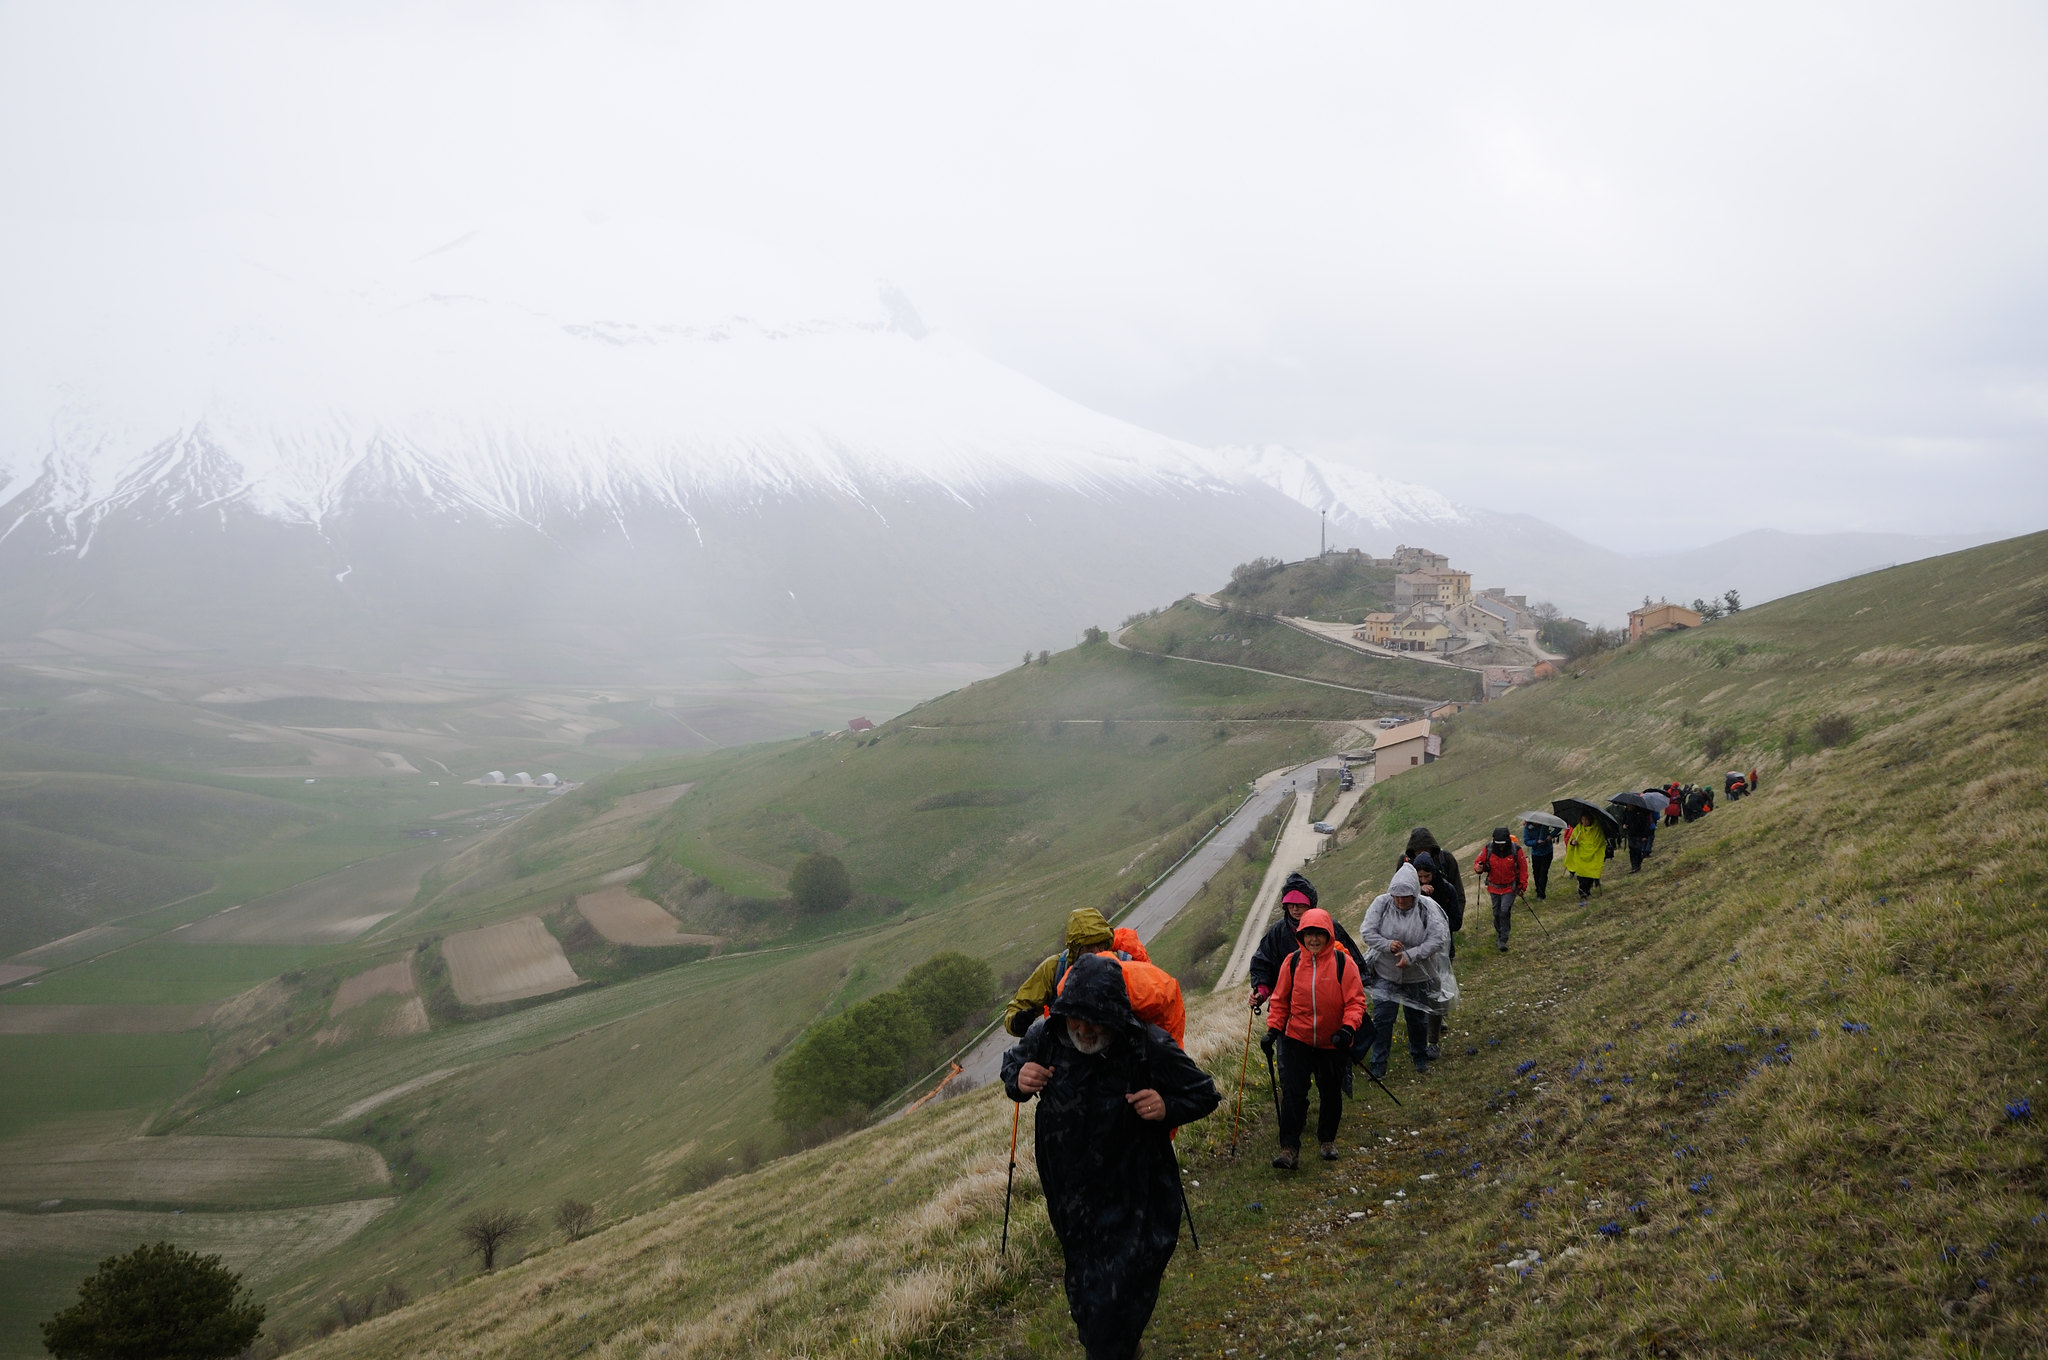 Mezzi a motore sui sentieri delle montagne umbre, la contrarietà del Club alpino italiano